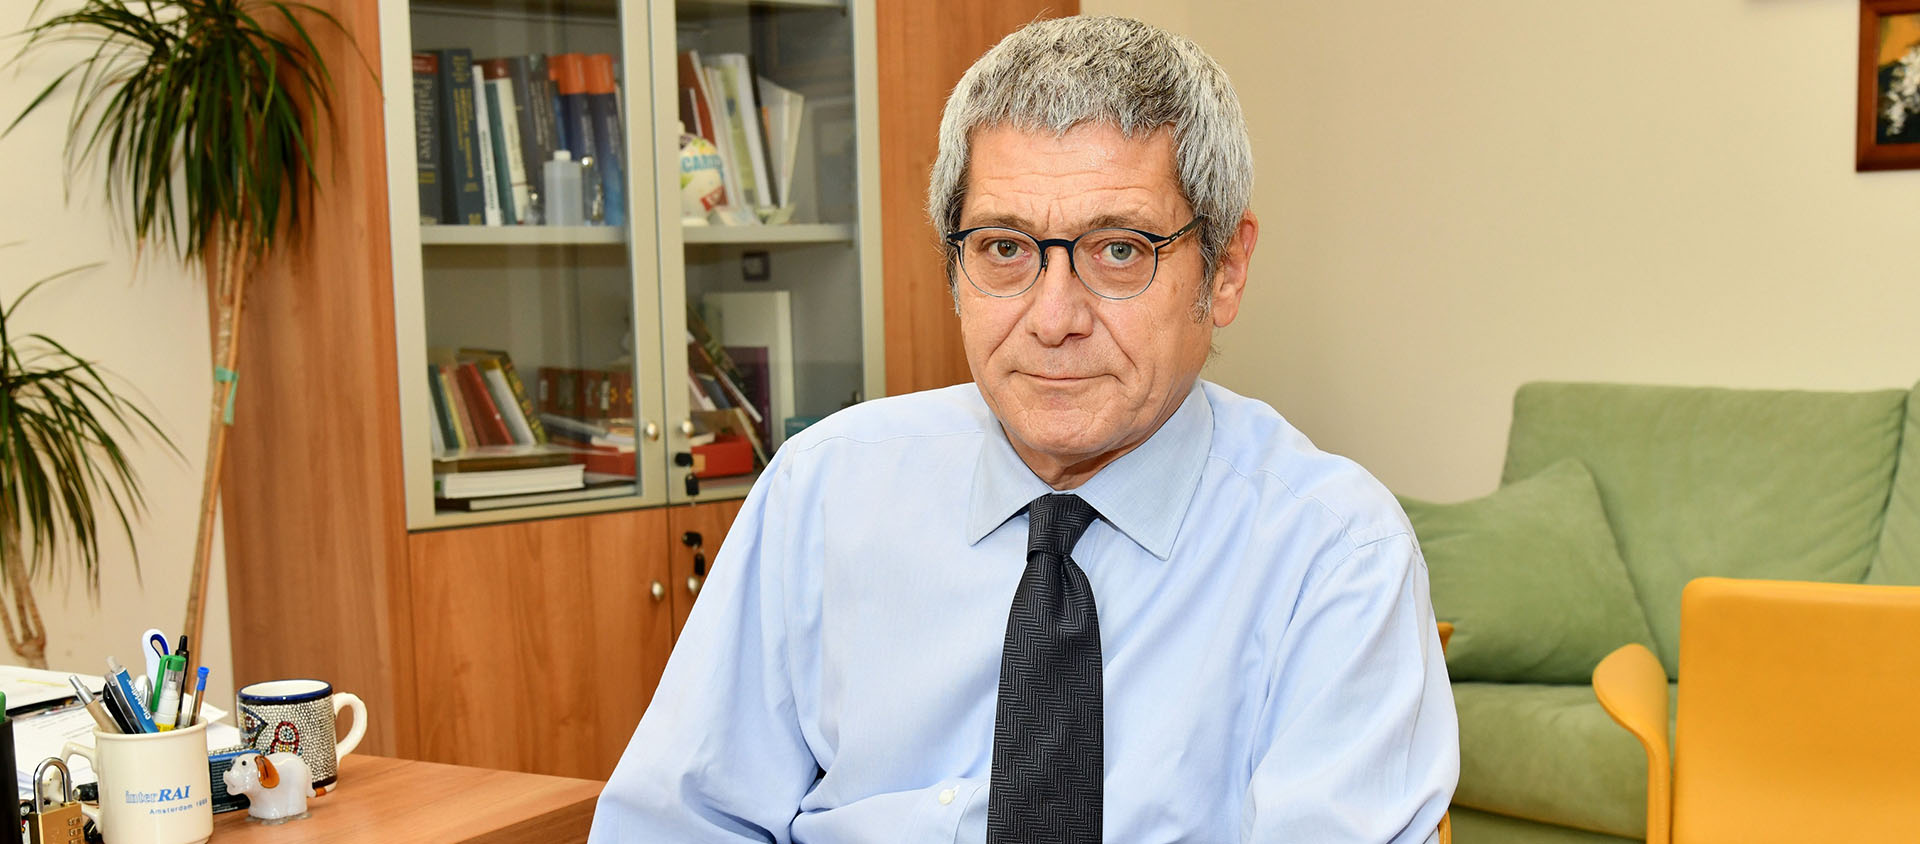 Le Dr Roberto Bernabei succède à Fabrizio Soccorsi, décédé le 9 janvier dernier | © Rimini meeting 2020